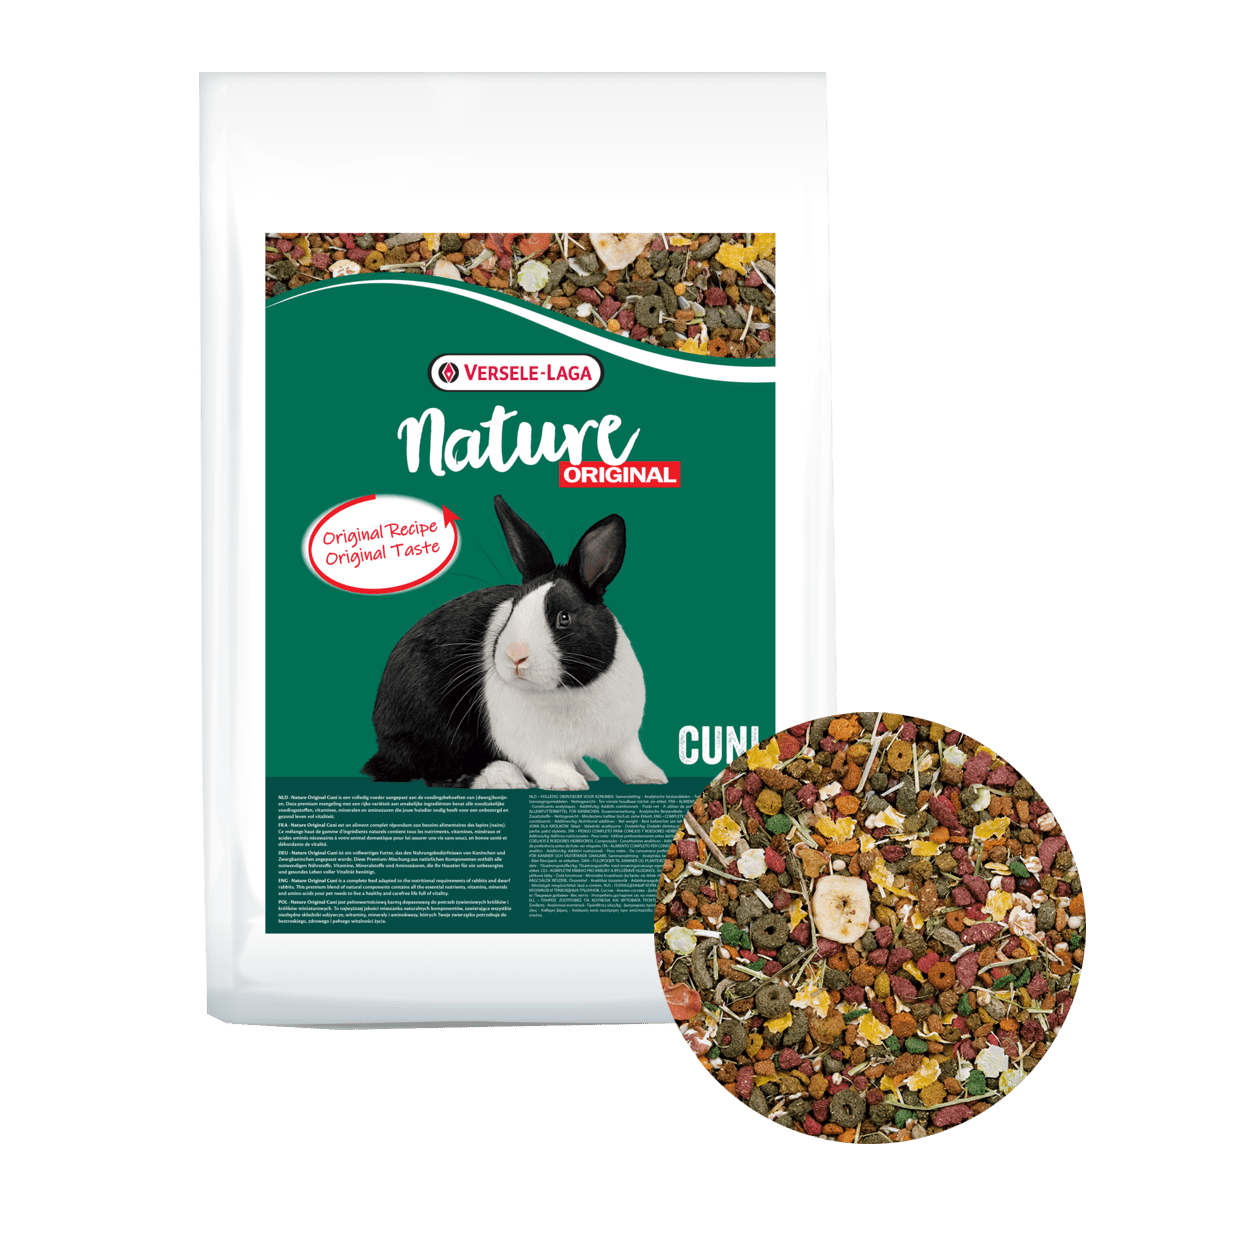 VERSELE-LAGA Cuni Nature Original 9kg - pokarm wysokobłonnikowa mieszanka dla królików miniaturowych